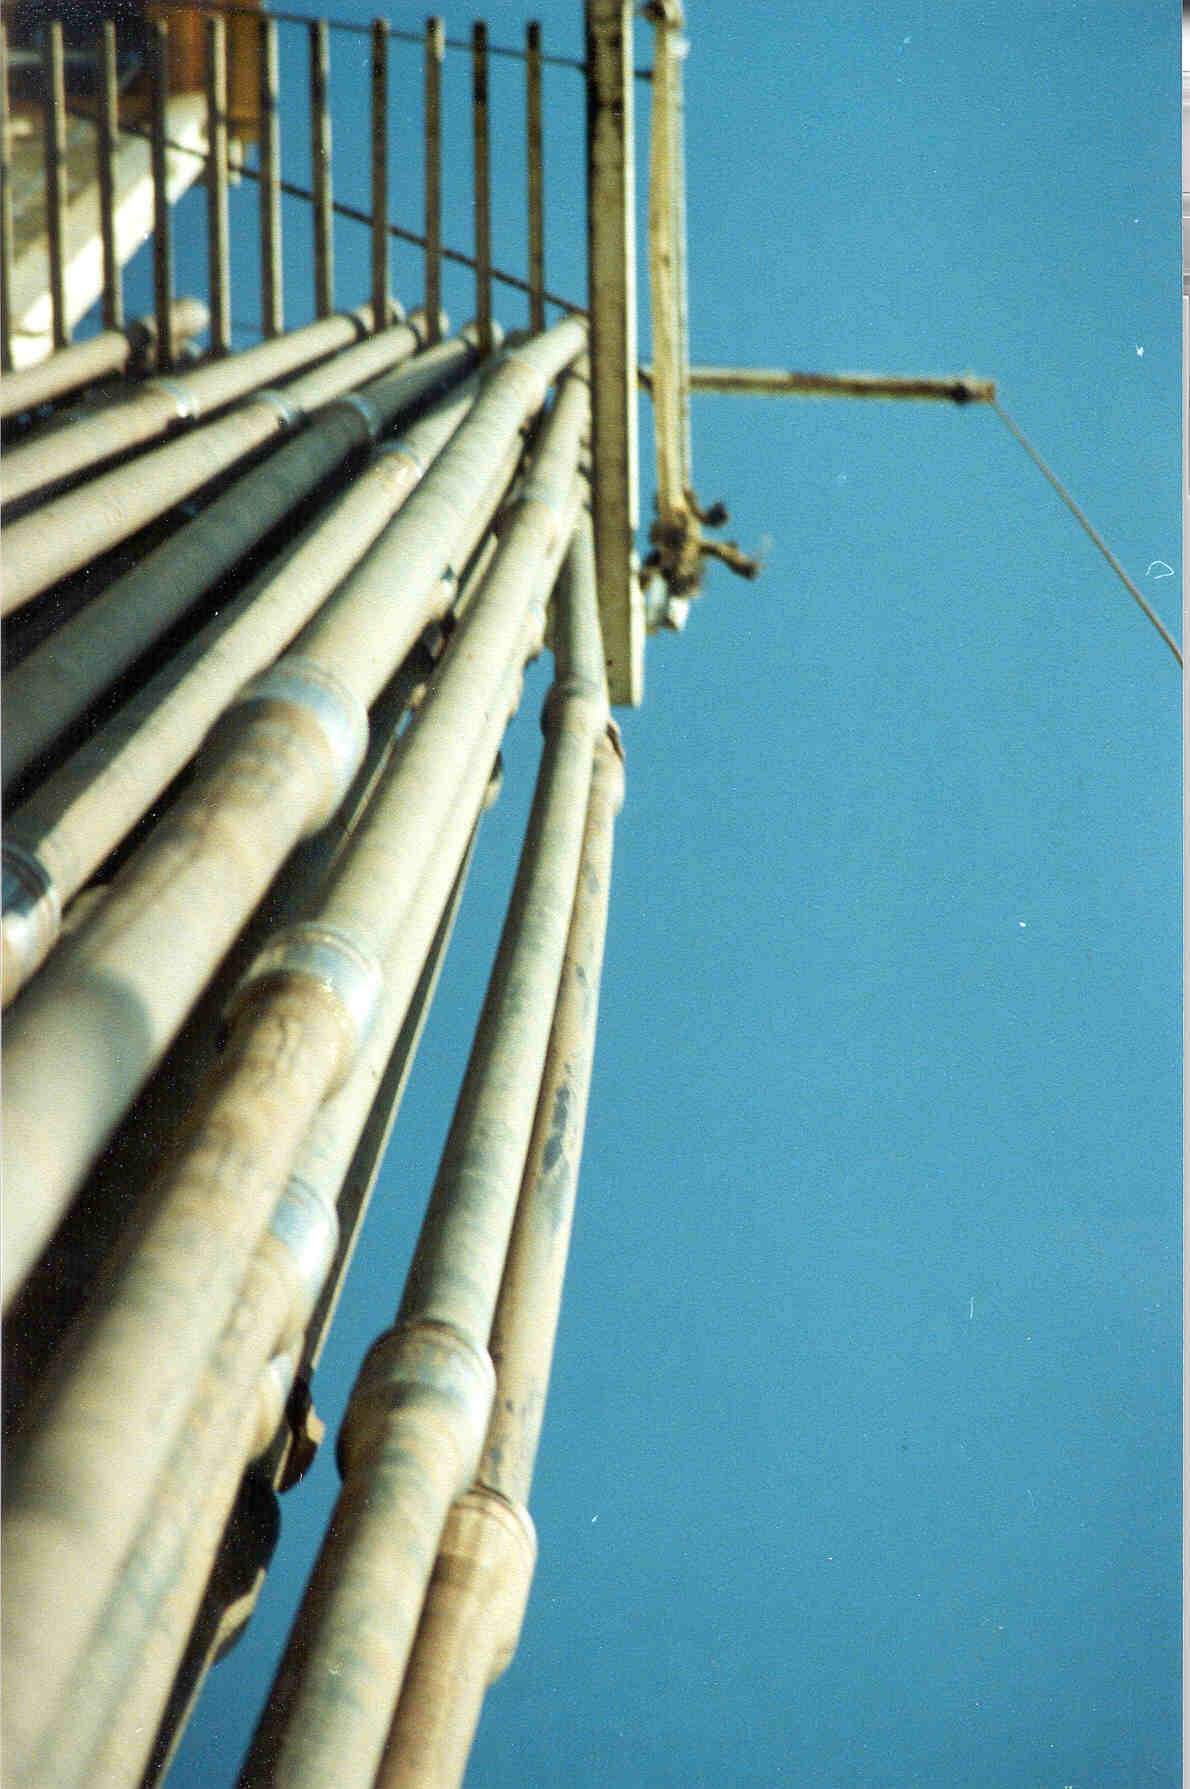 Drill pipe alignment